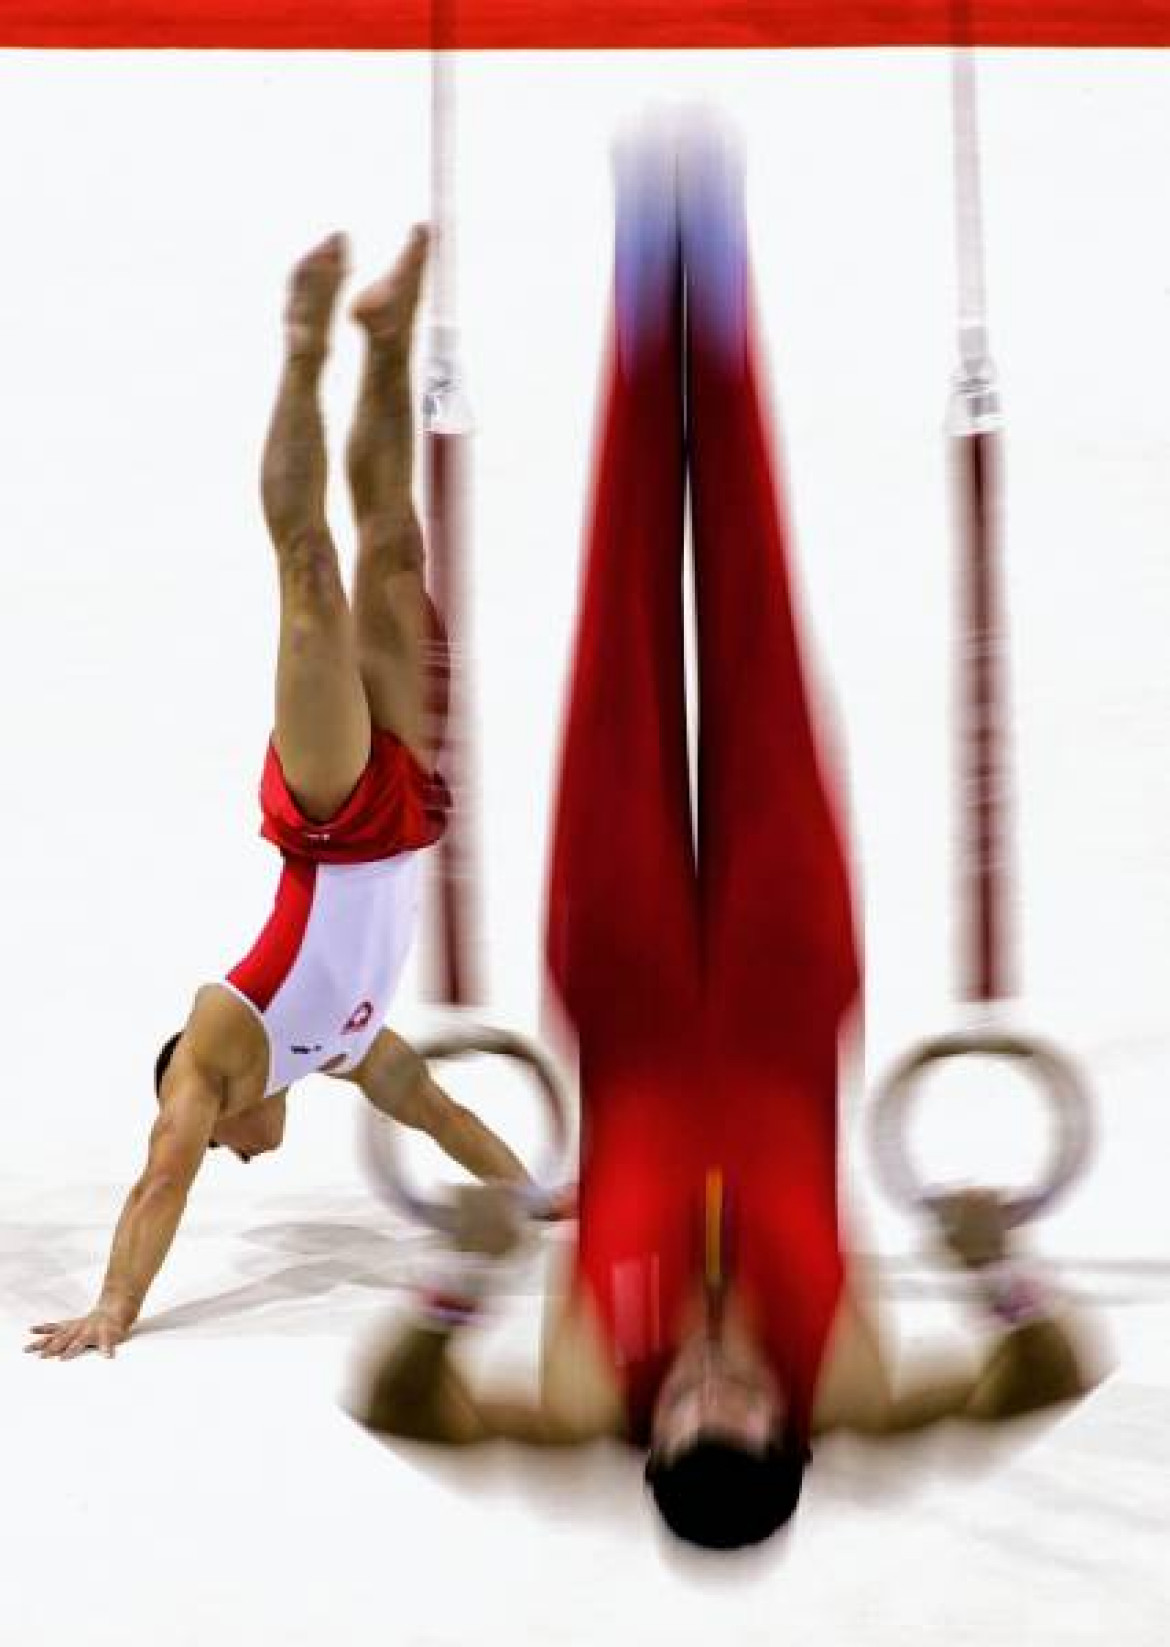 1. nagroda w kategorii Sport w akcji (zdjęcie pojedyncze), Max Rossi, Włochy, Reuters, Mistrzostwa Świata w Gimnastyce Artystycznej, Dania, 14 października